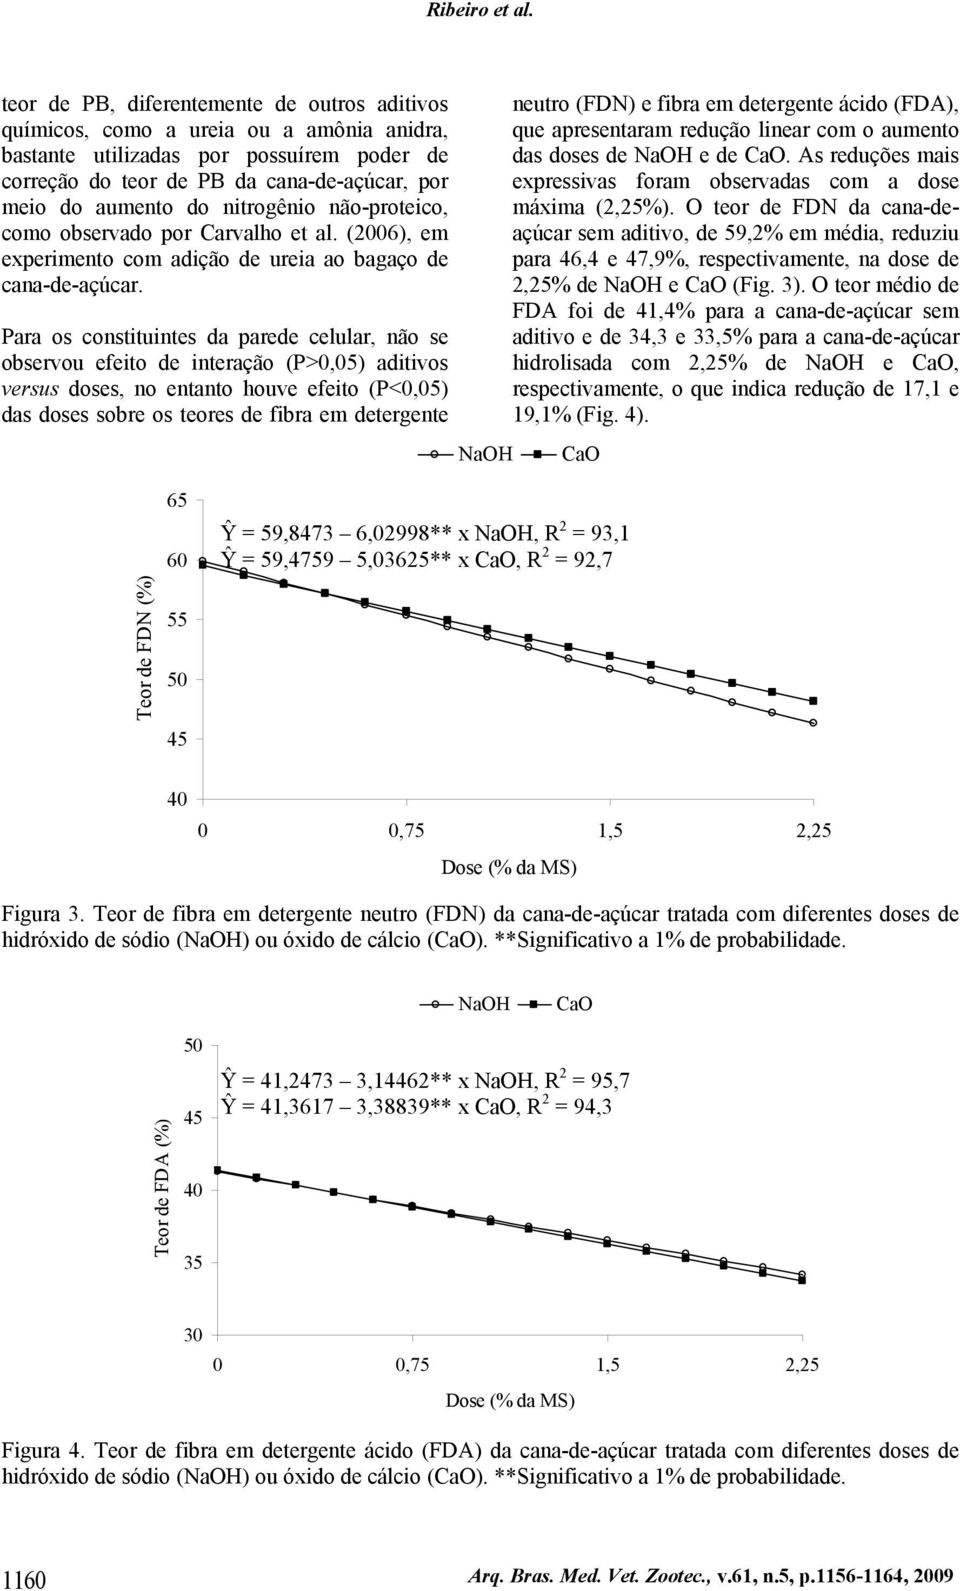 nitrogênio não-proteico, como observado por Carvalho et al. (2006), em experimento com adição de ureia ao bagaço de cana-de-açúcar.